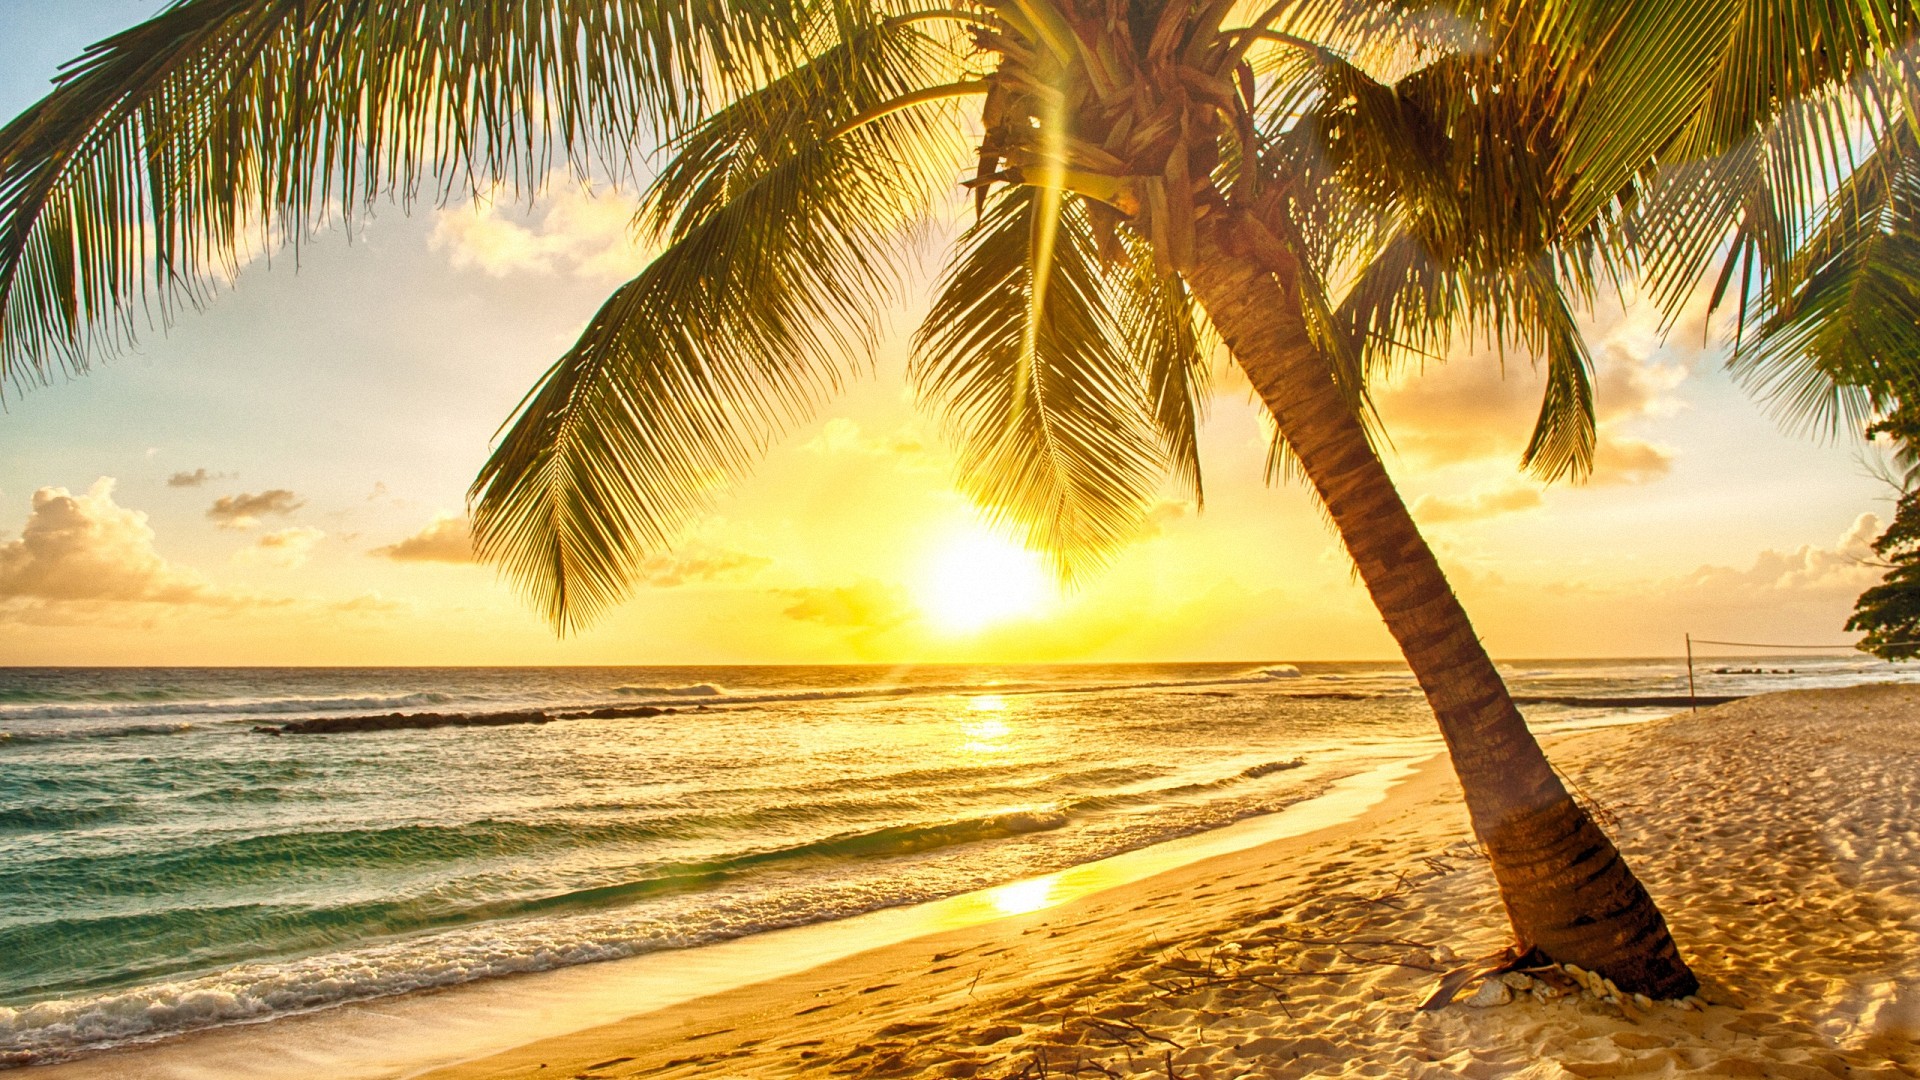 fond d'écran paradisiaque,la nature,ciel,arbre,palmier,plage